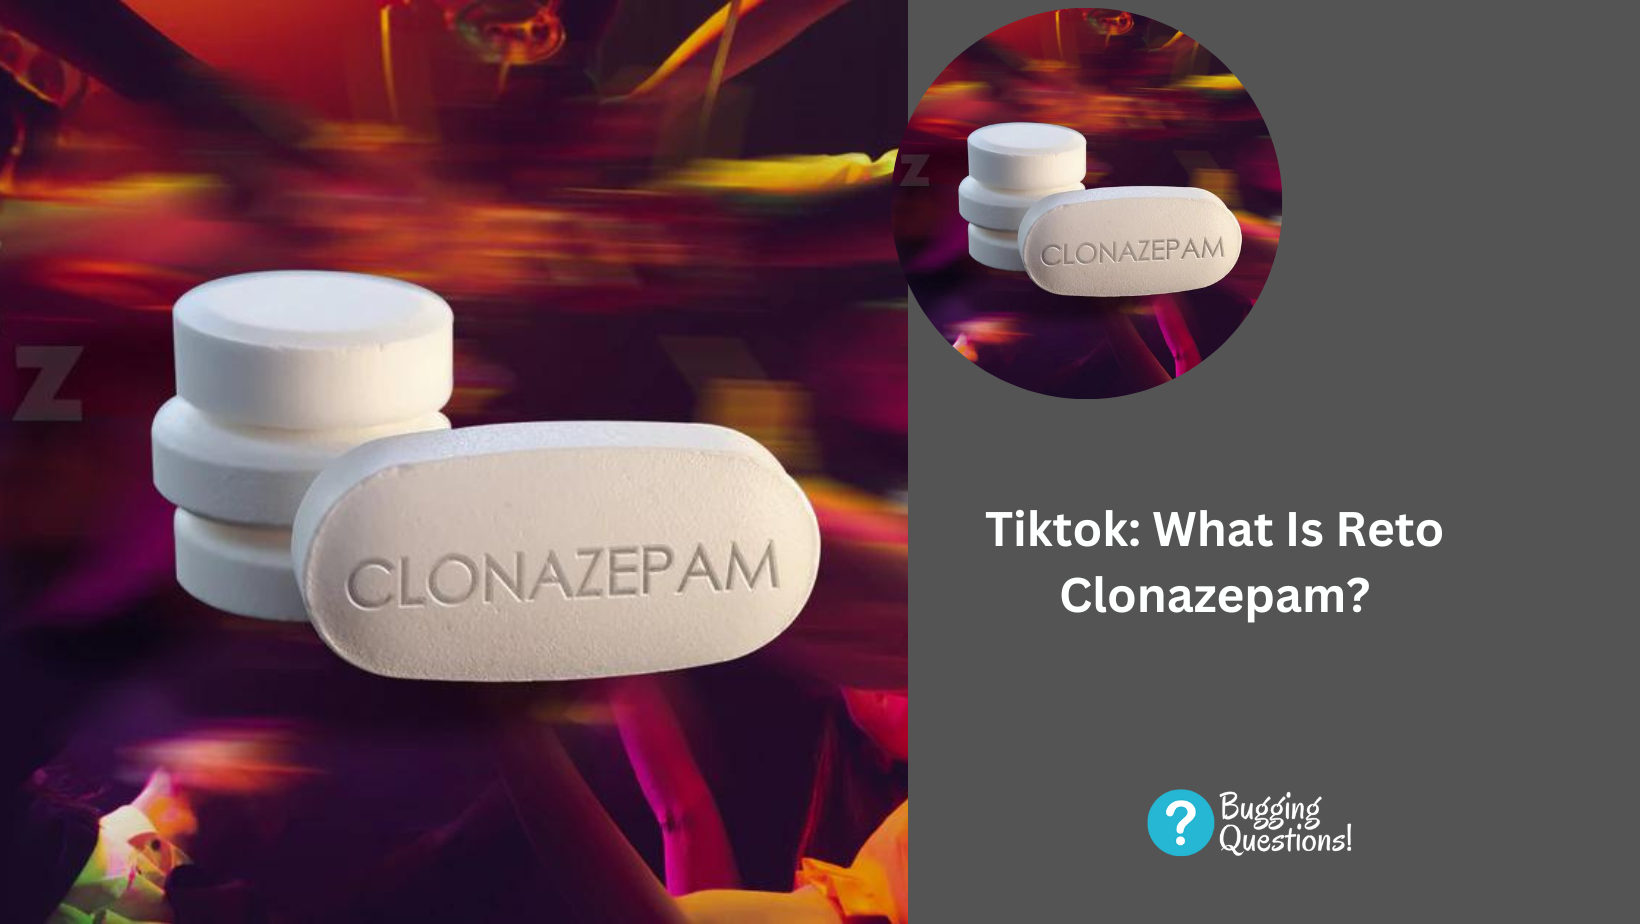 Tiktok: What Is Reto Clonazepam?